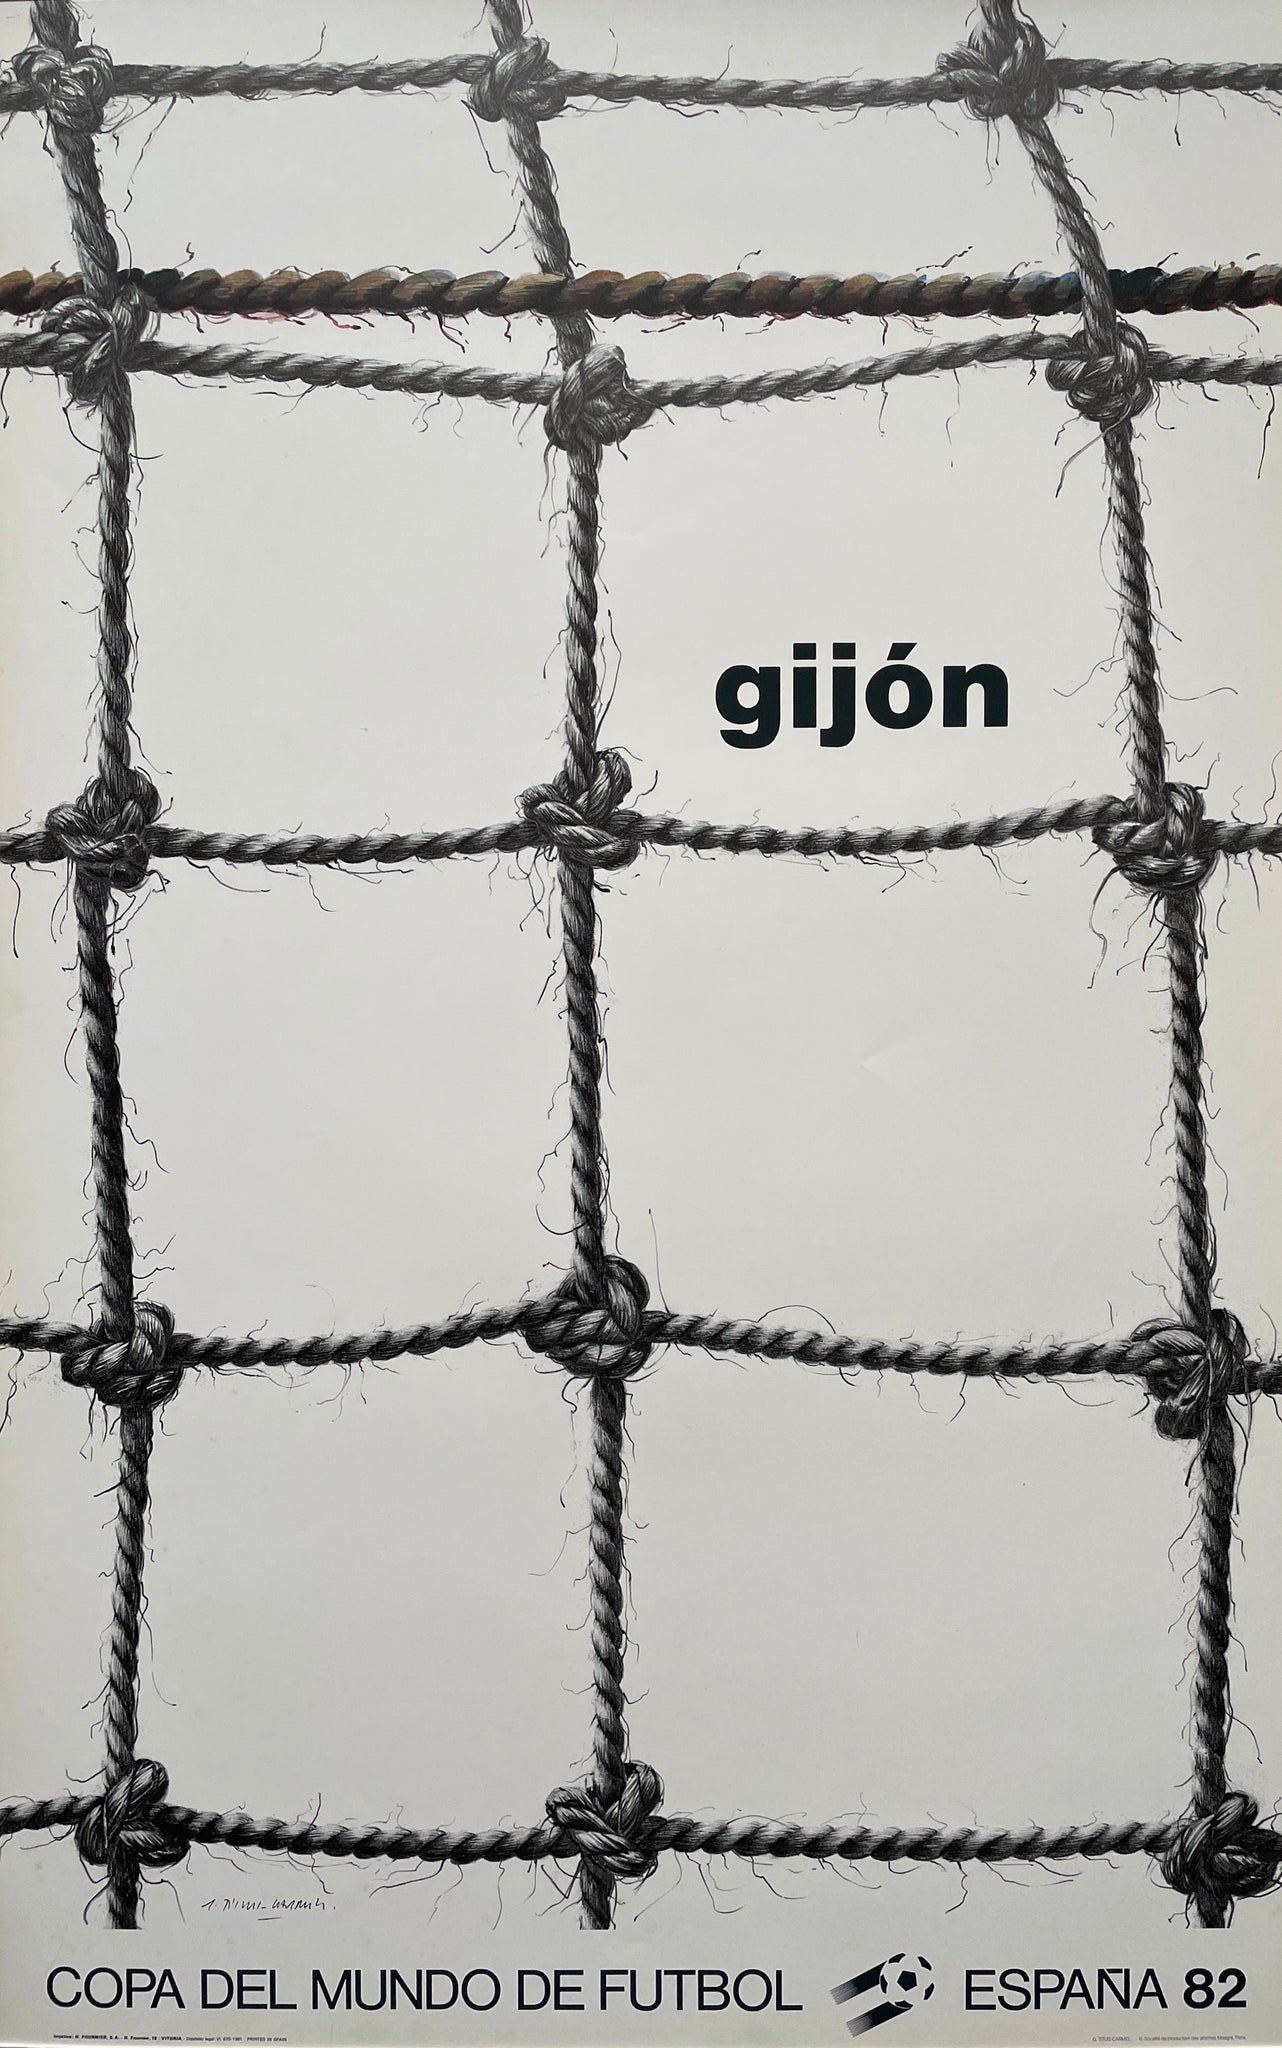 World Cup Poster - Gijón